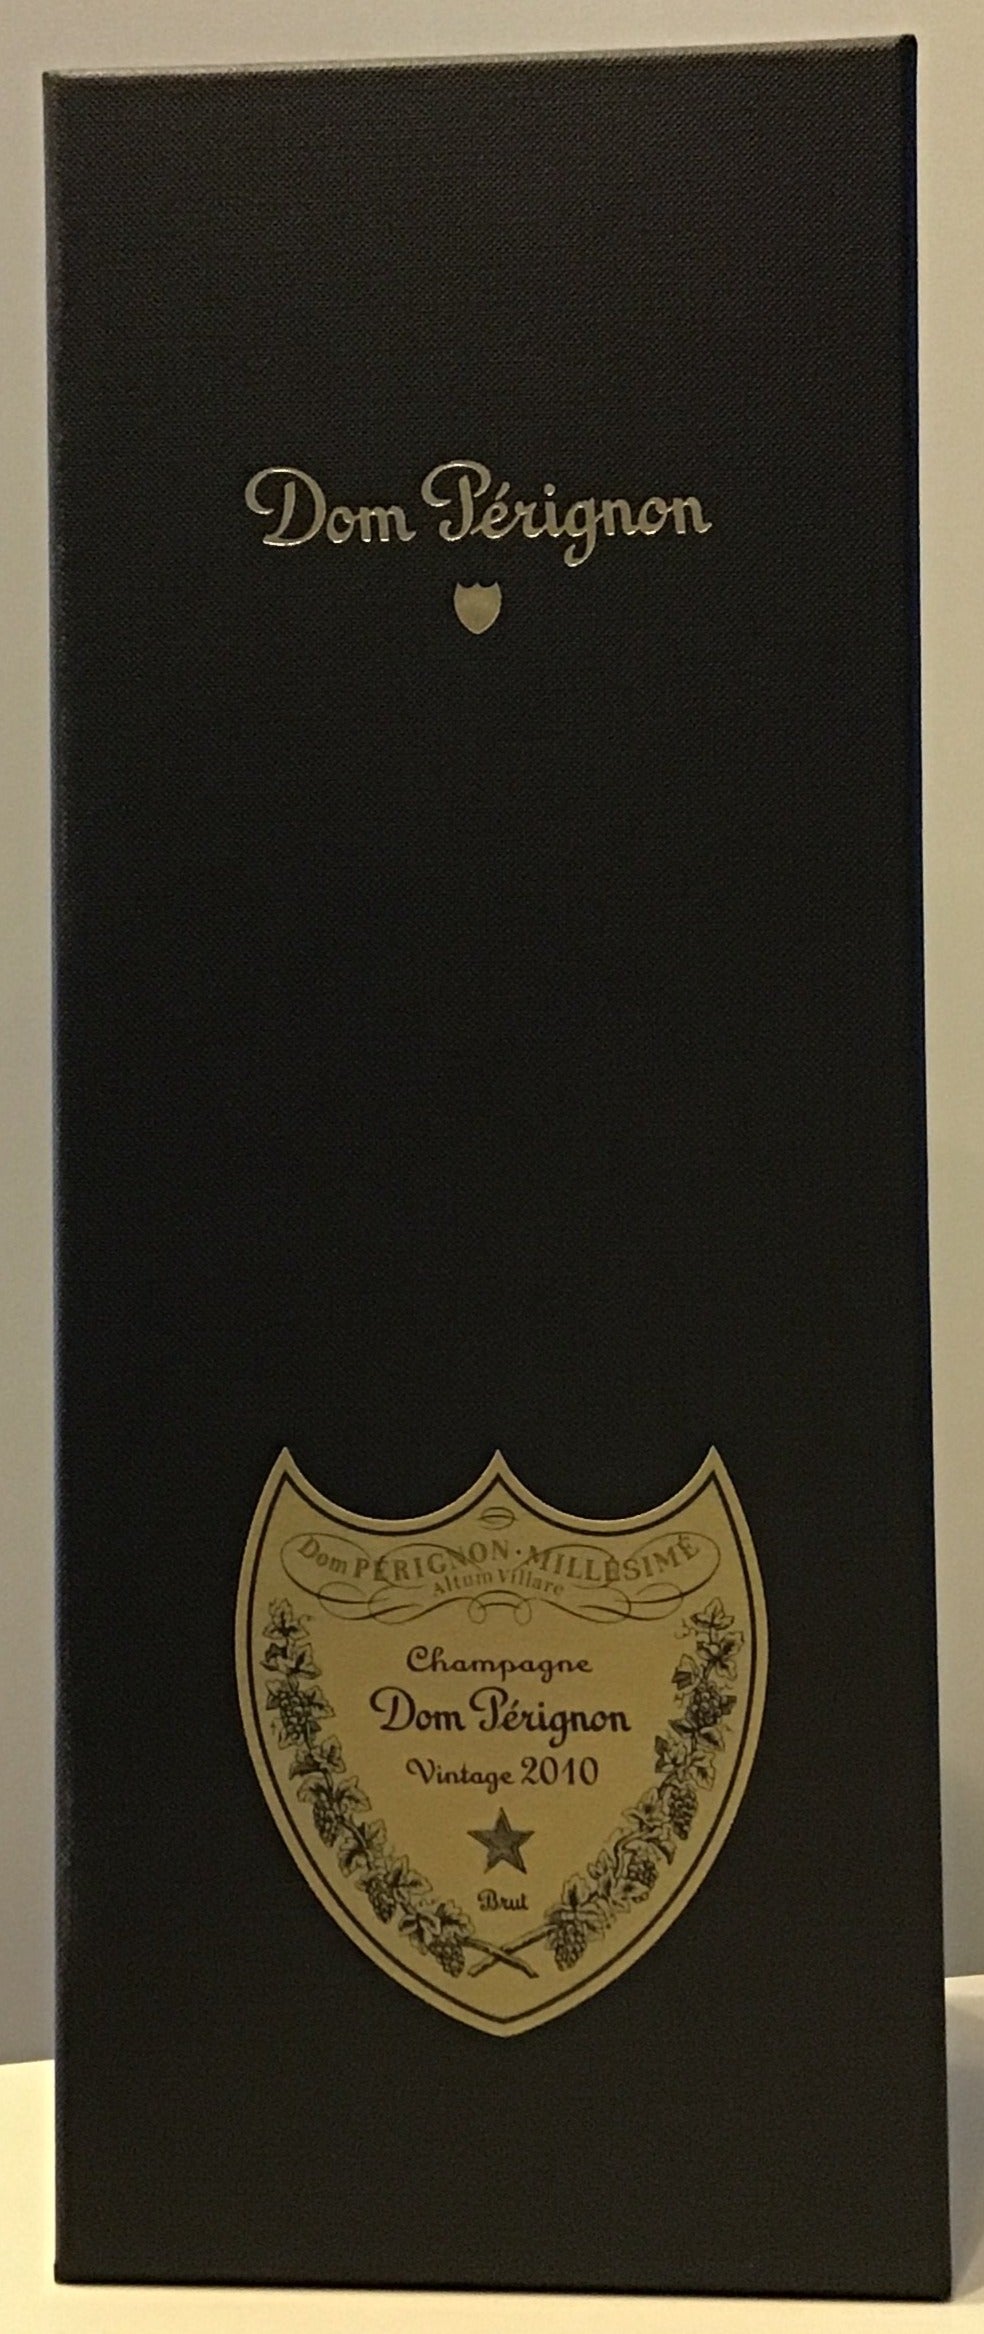 Dom Perignon Vintage 2010 - Gift Box